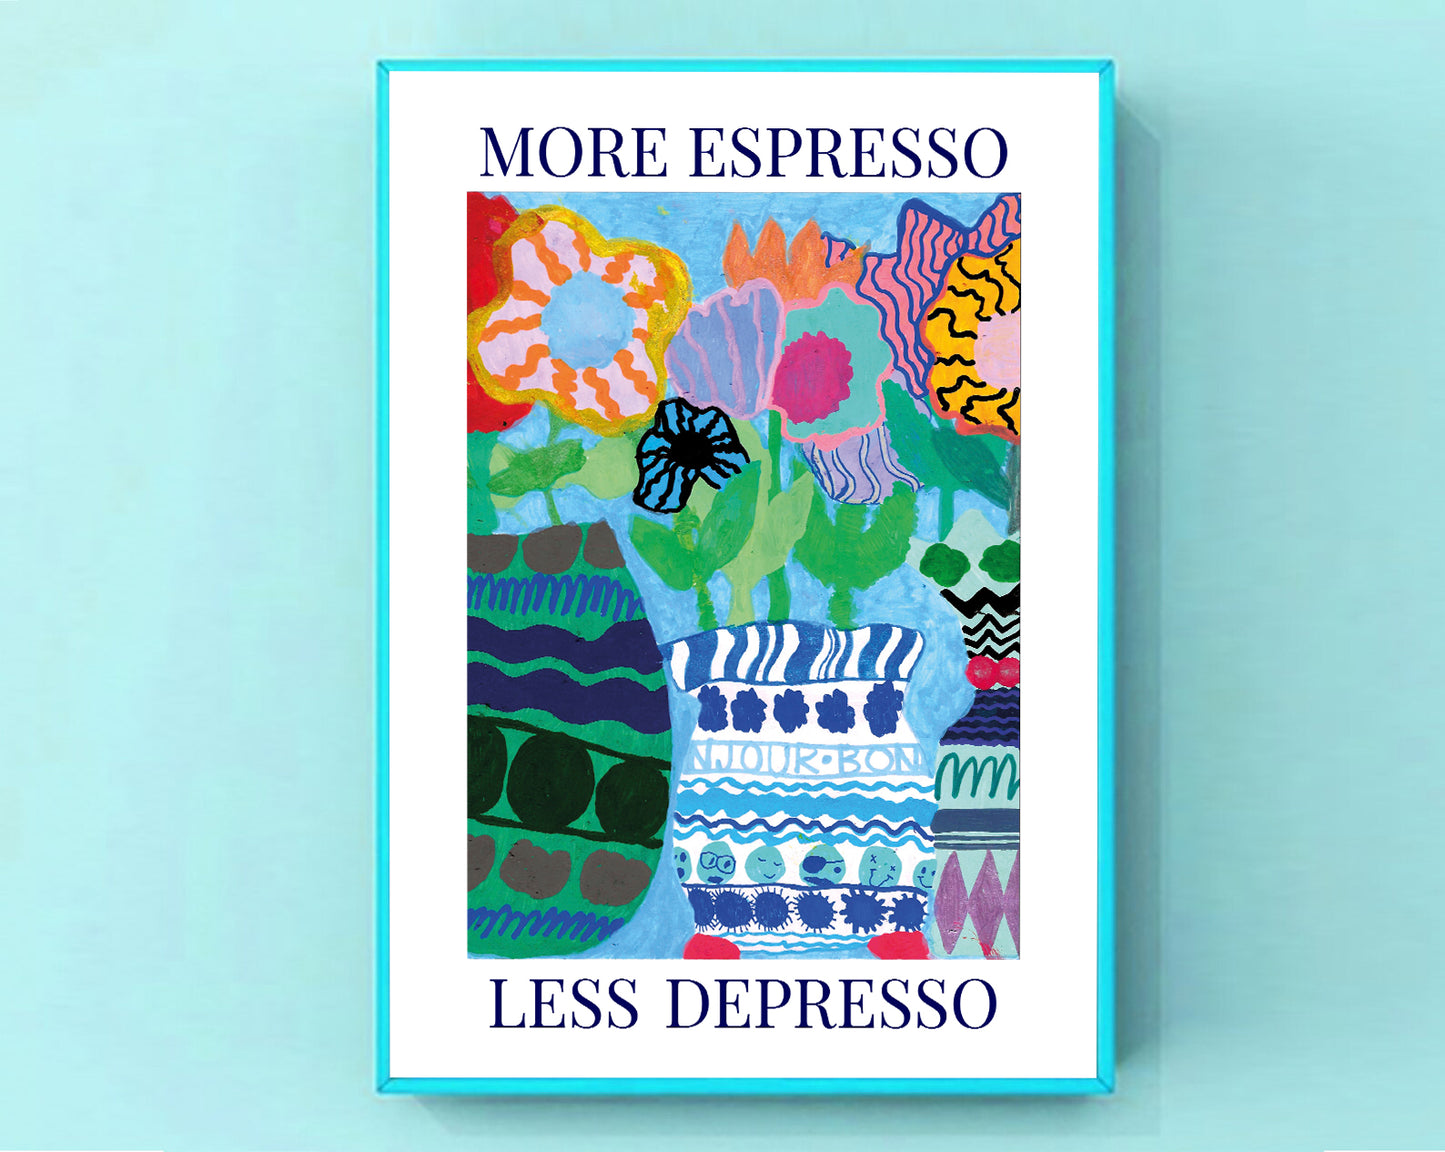 More espresso, less depresso – Version 2